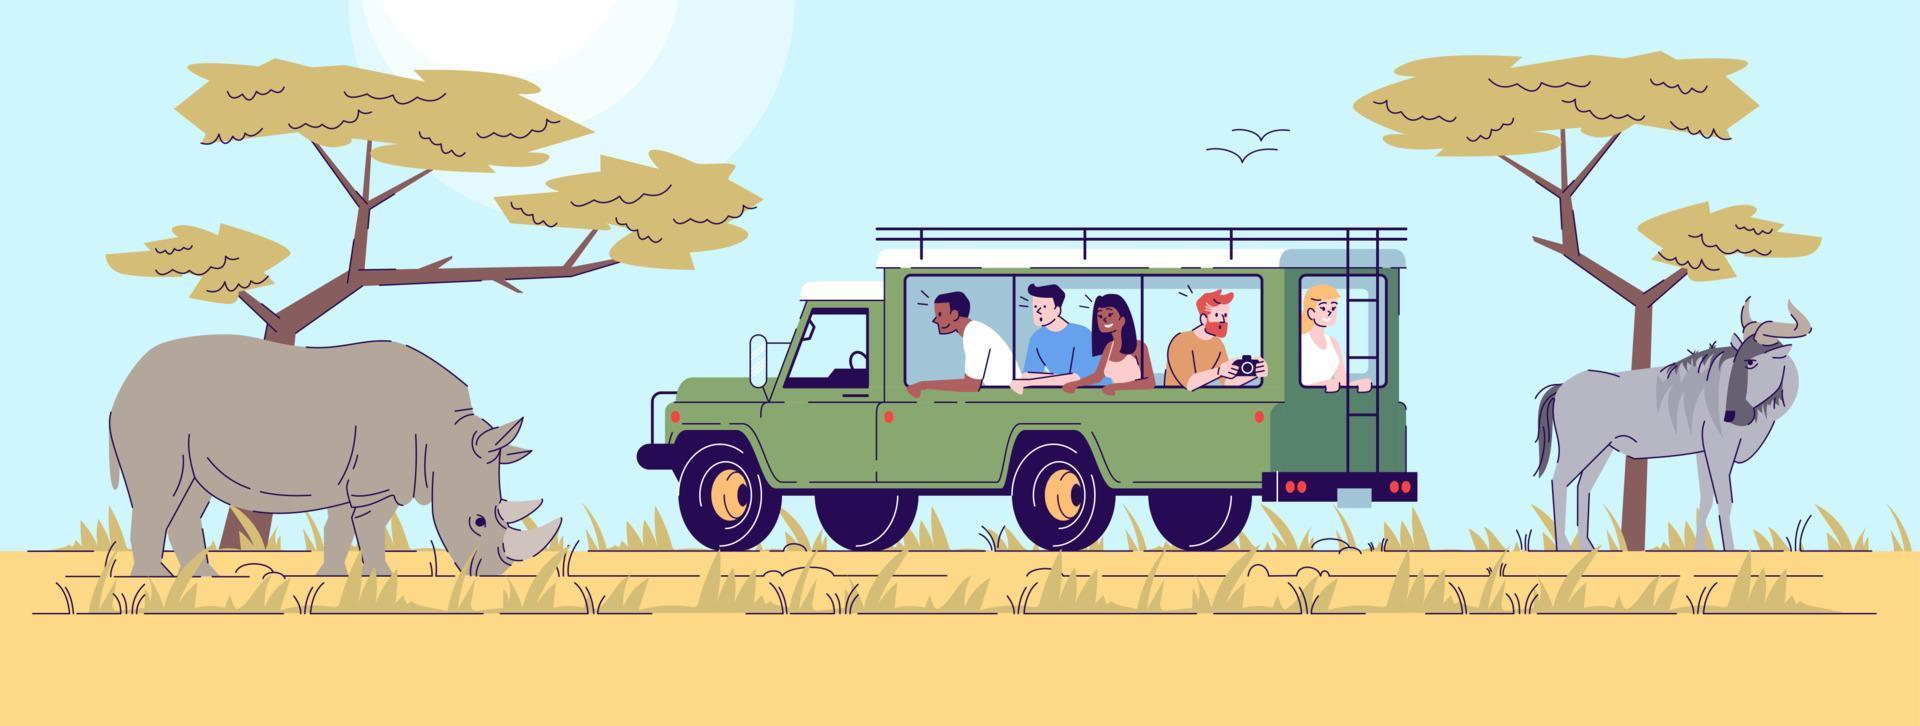 illustration de doodle plat safari tour. personnes observant des animaux sauvages depuis une camionnette dans le désert. parc de conservation de la faune. personnage de dessin animé 2d de tourisme indonésien avec contour à usage commercial vecteur